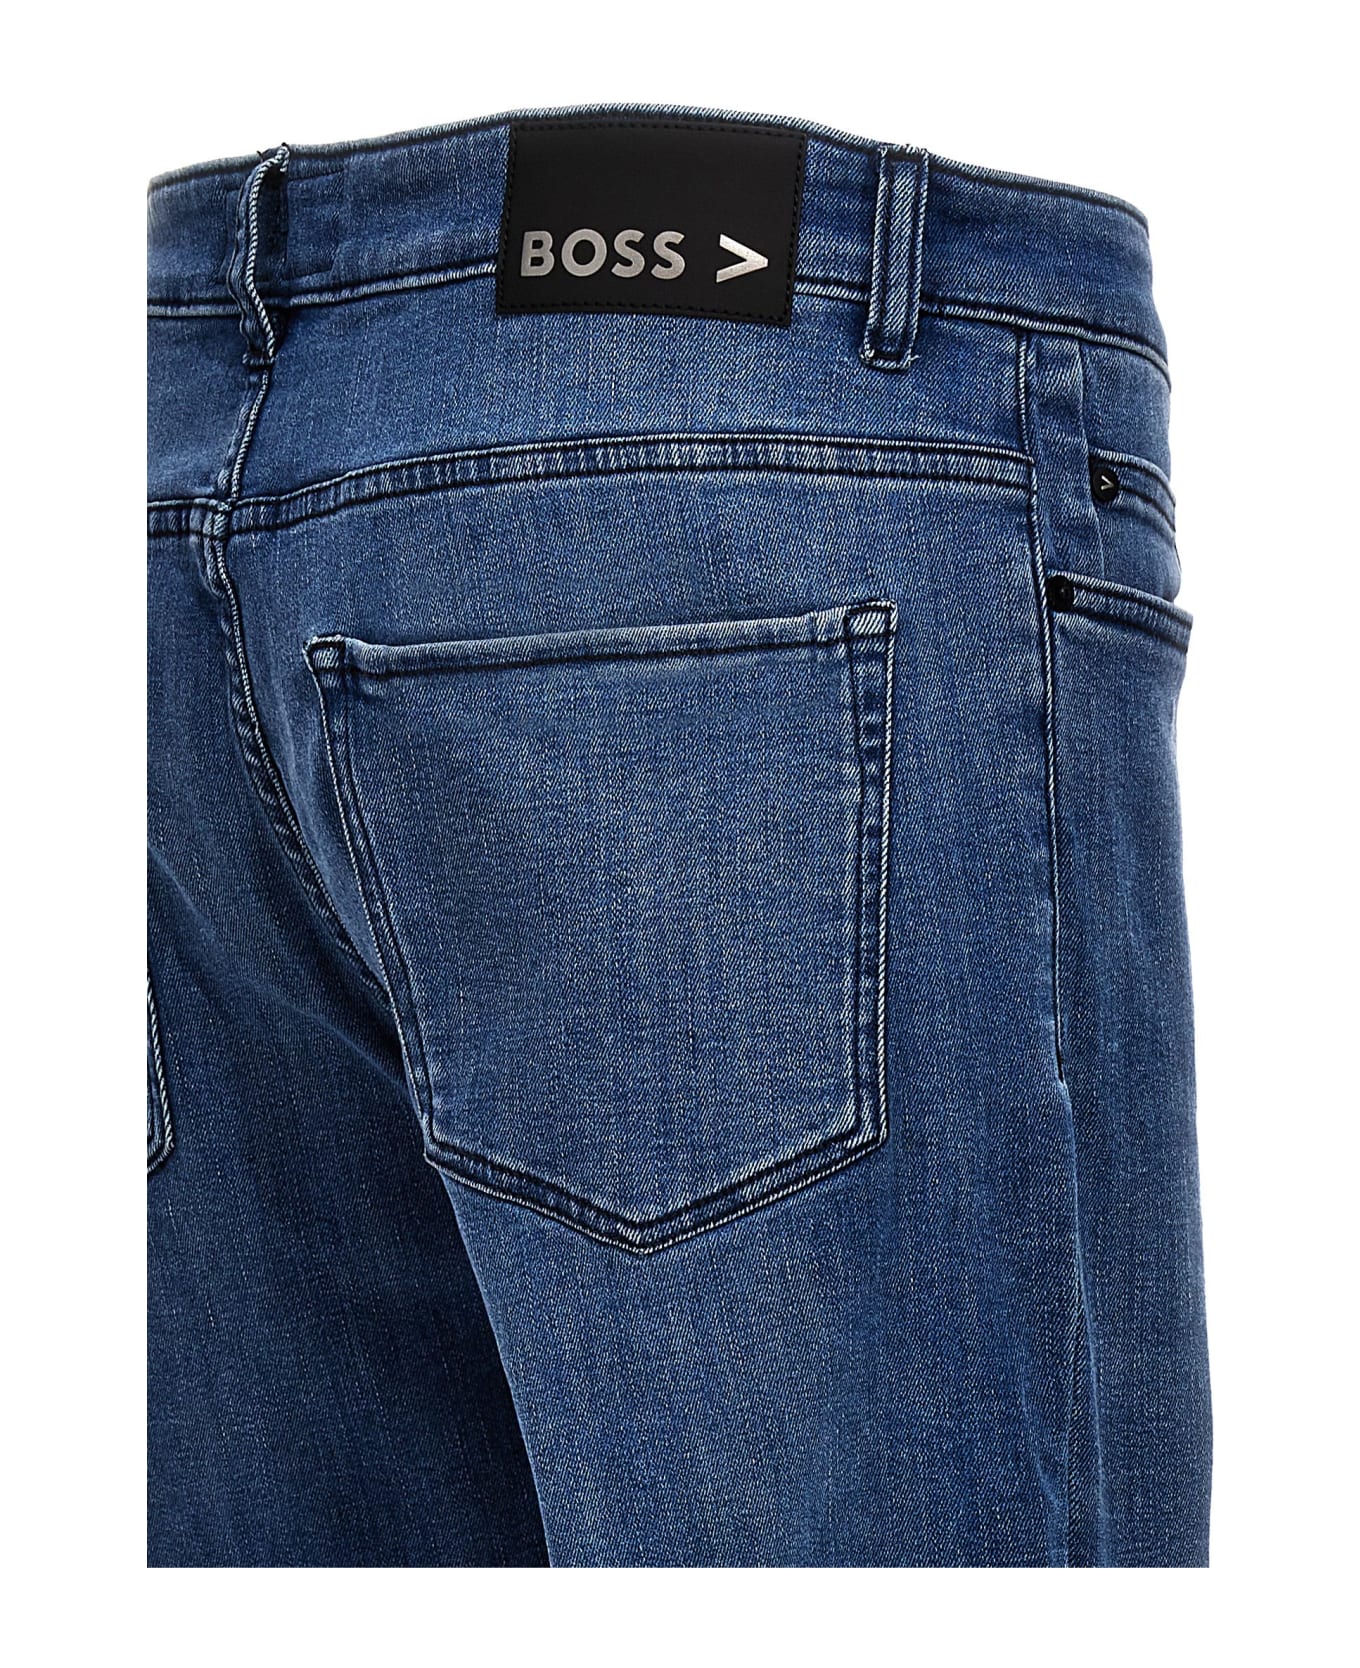 Hugo Boss 'delaware' Jeans - Blue